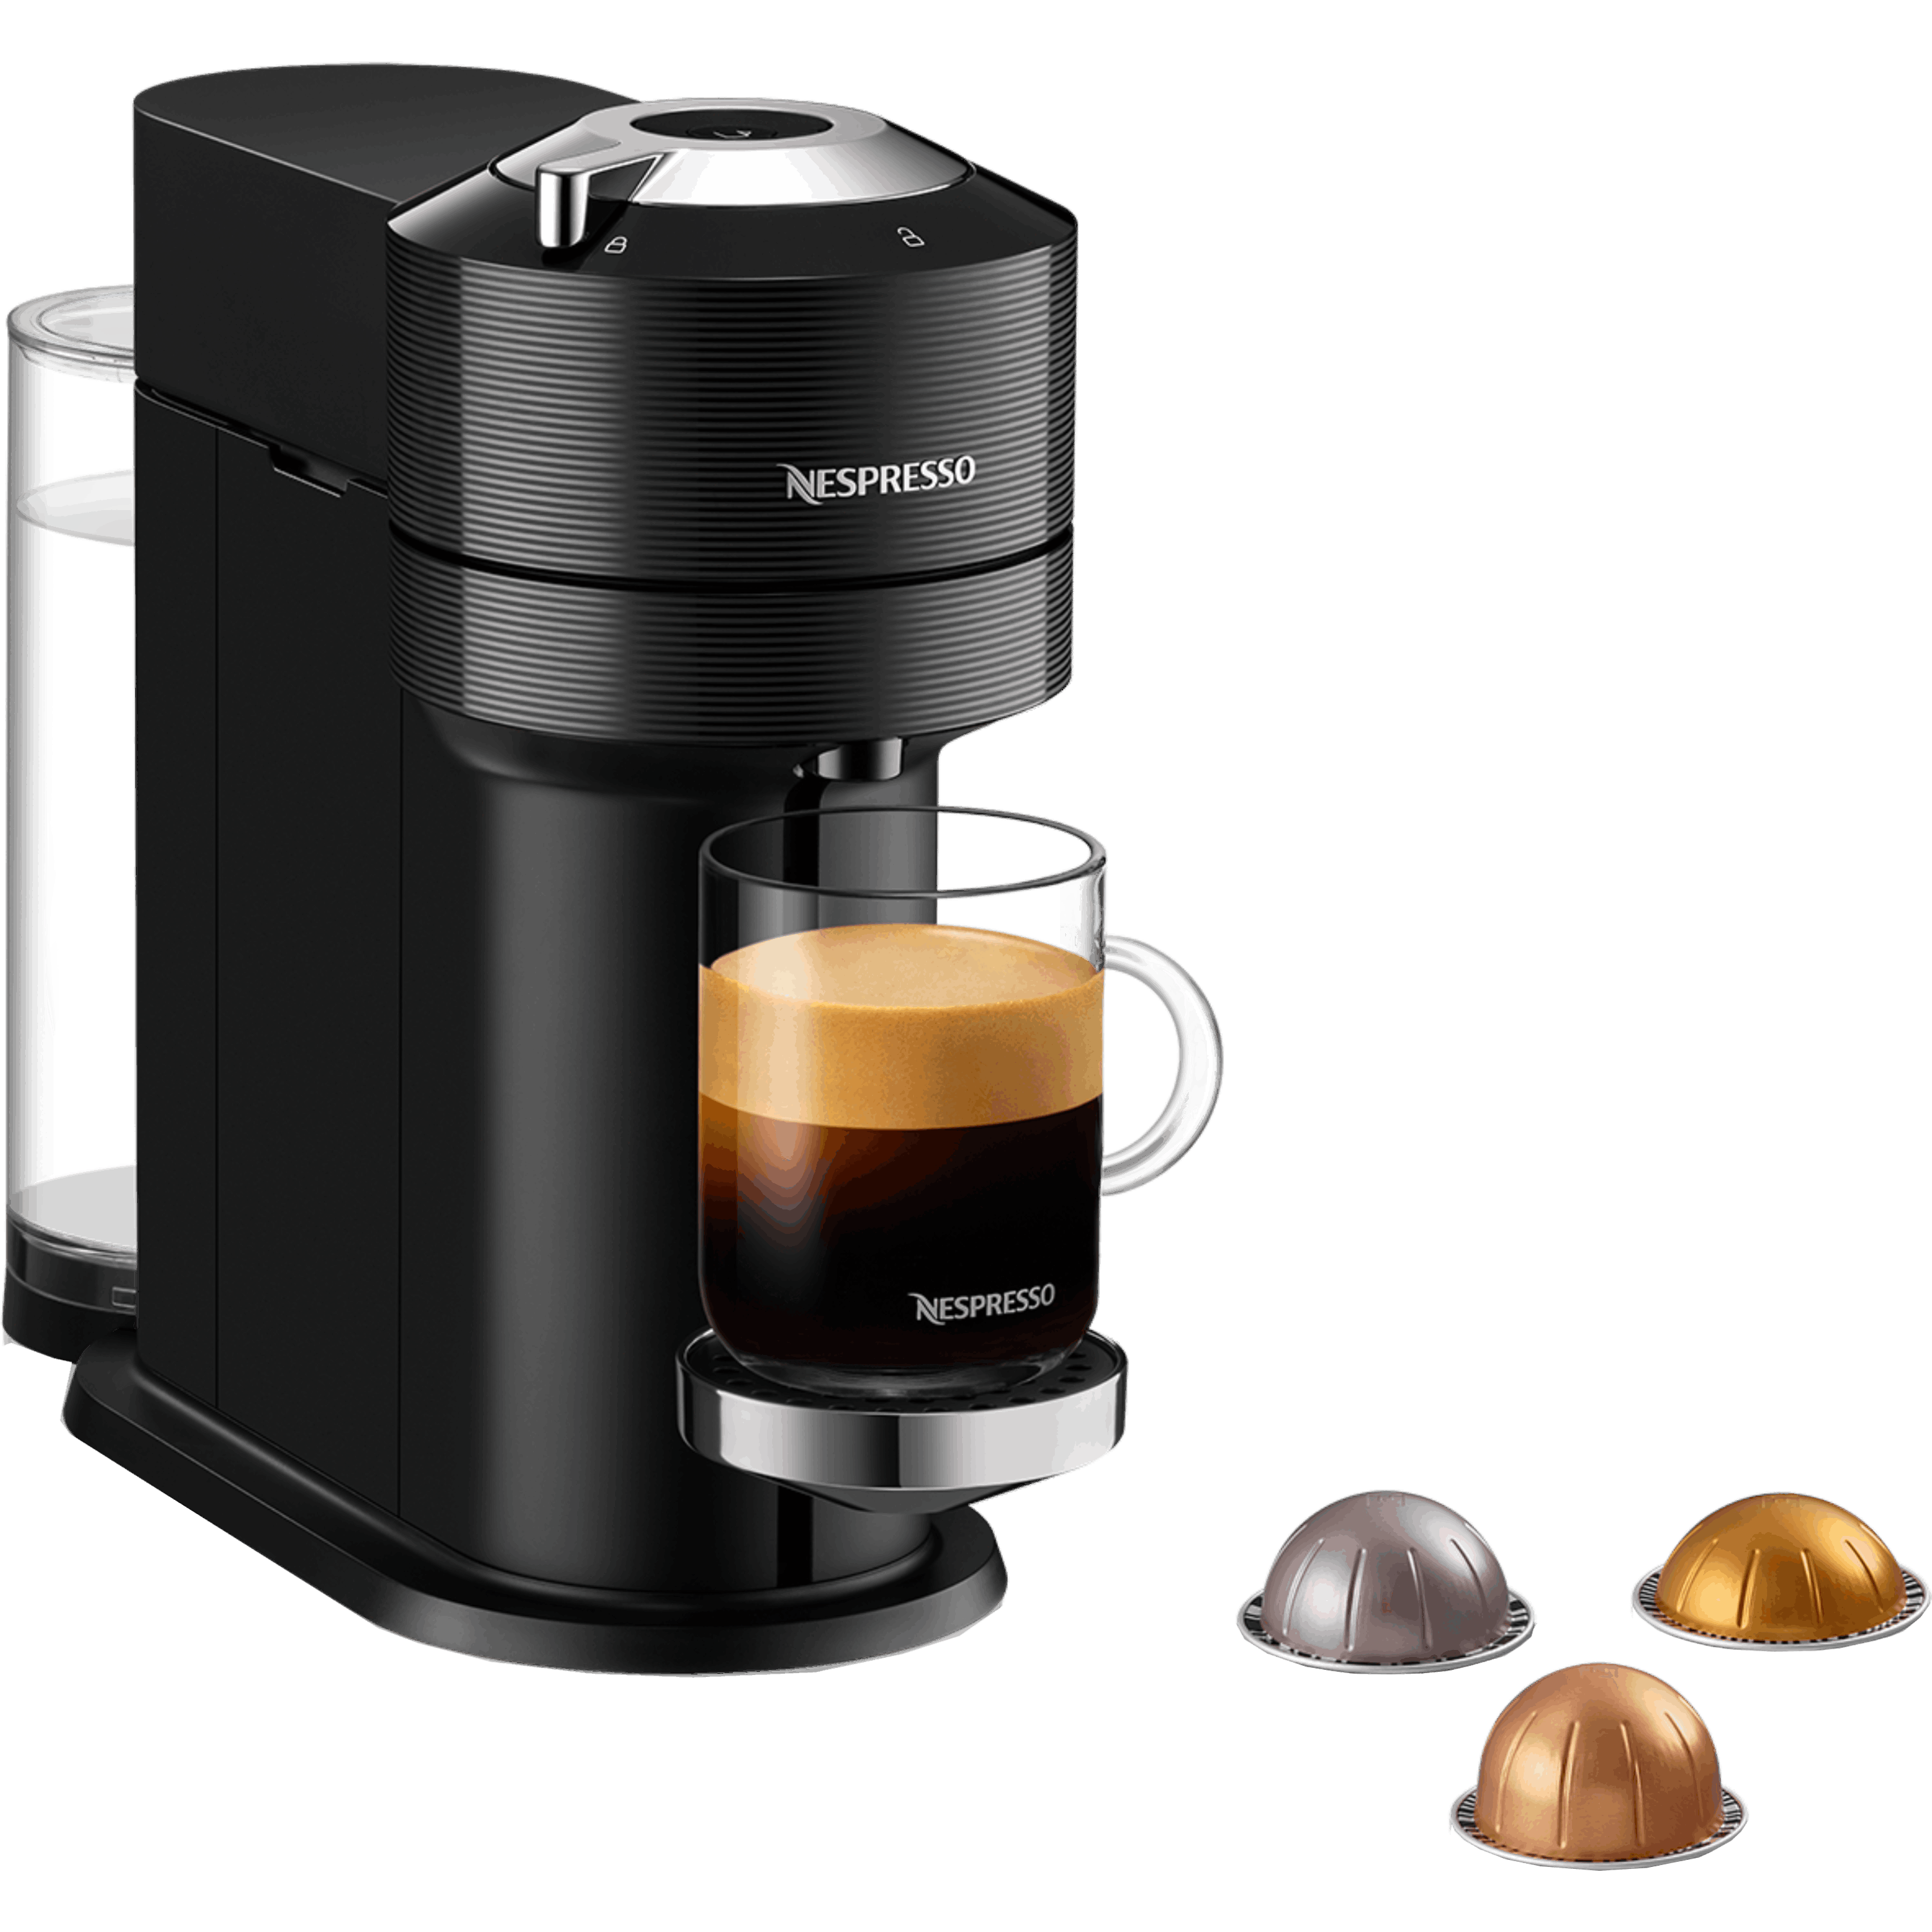 ماكينة قهوة VertuoNext  NESPRESSO موديل GCV1 בلون أسود - مع מקציף ו – 20 קפסולות  קפה במתנה